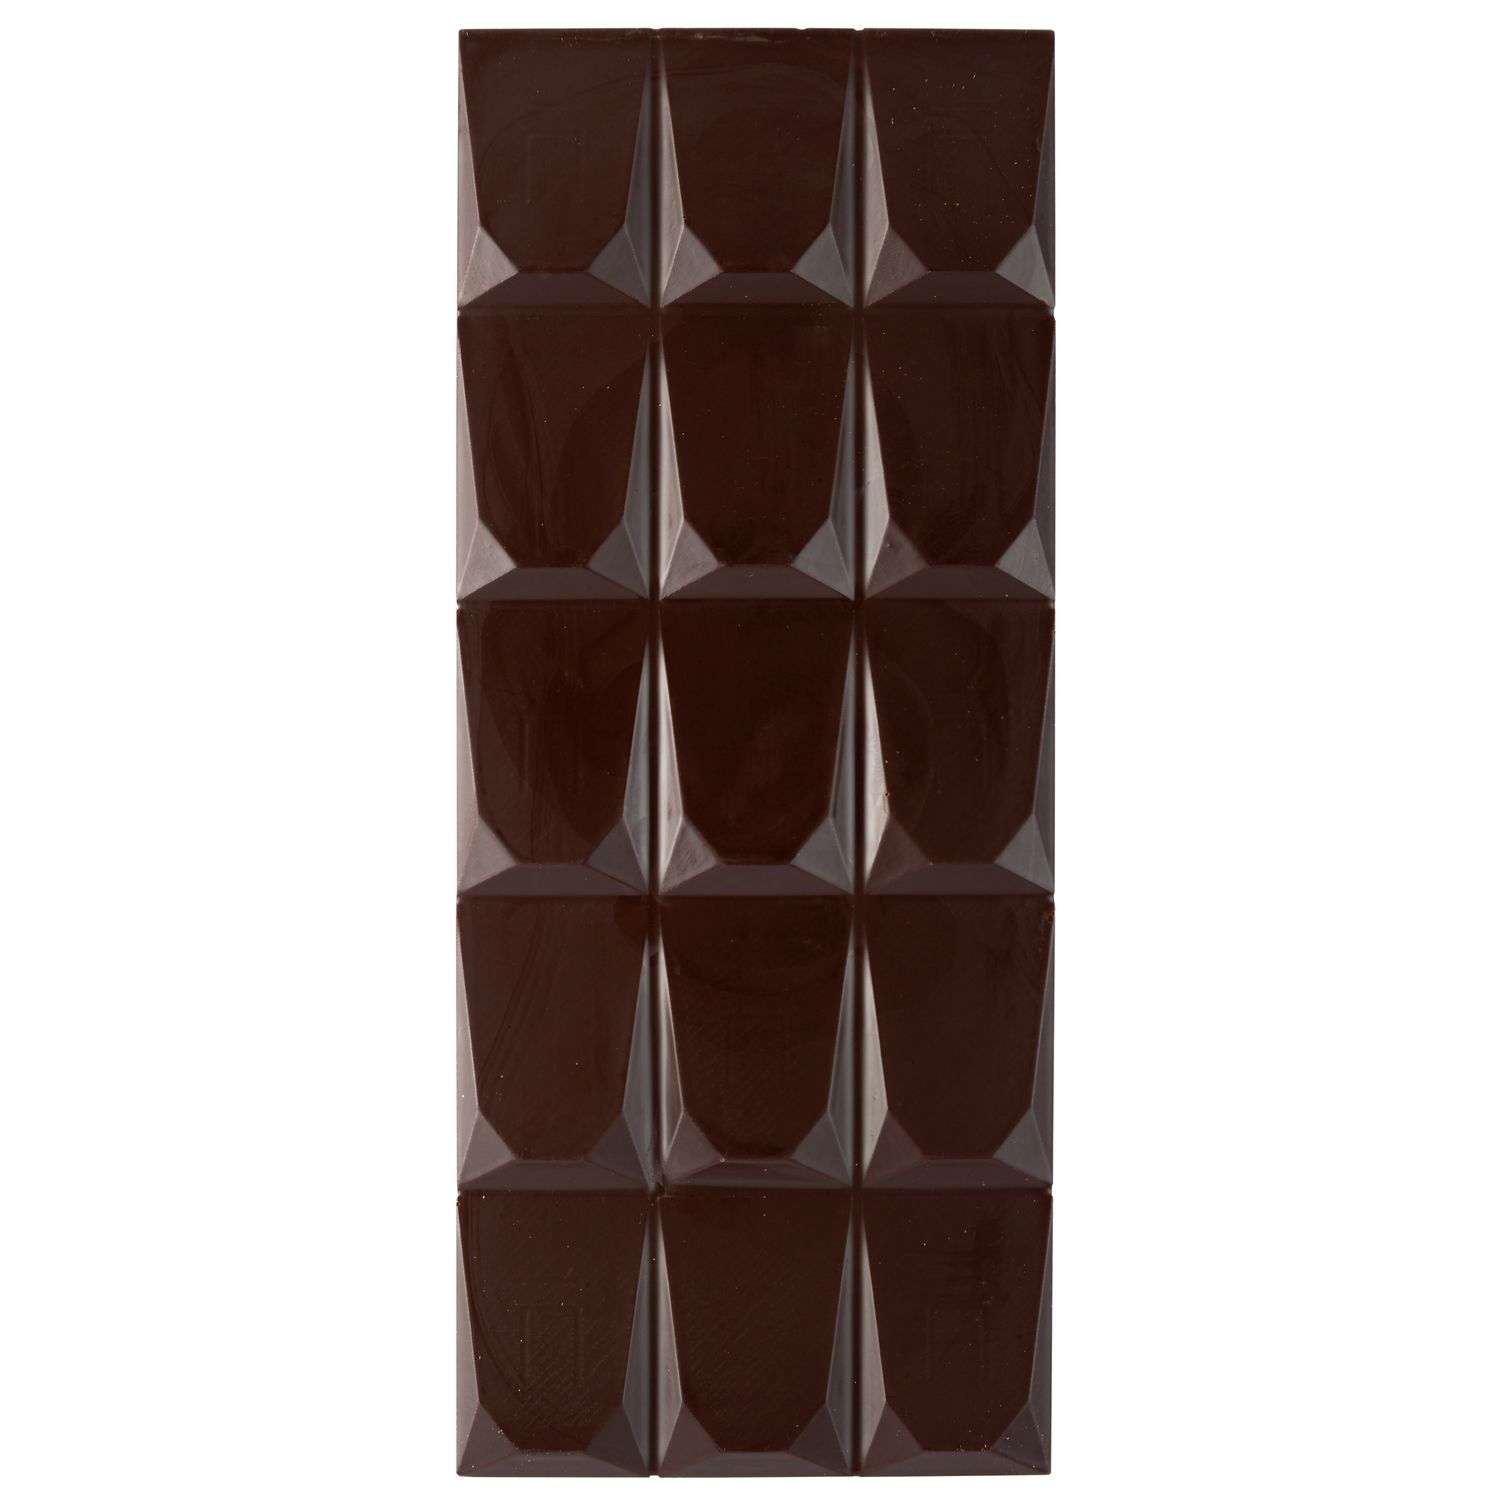 Шоколад ПроПорция горький 70% 75г - фото 3